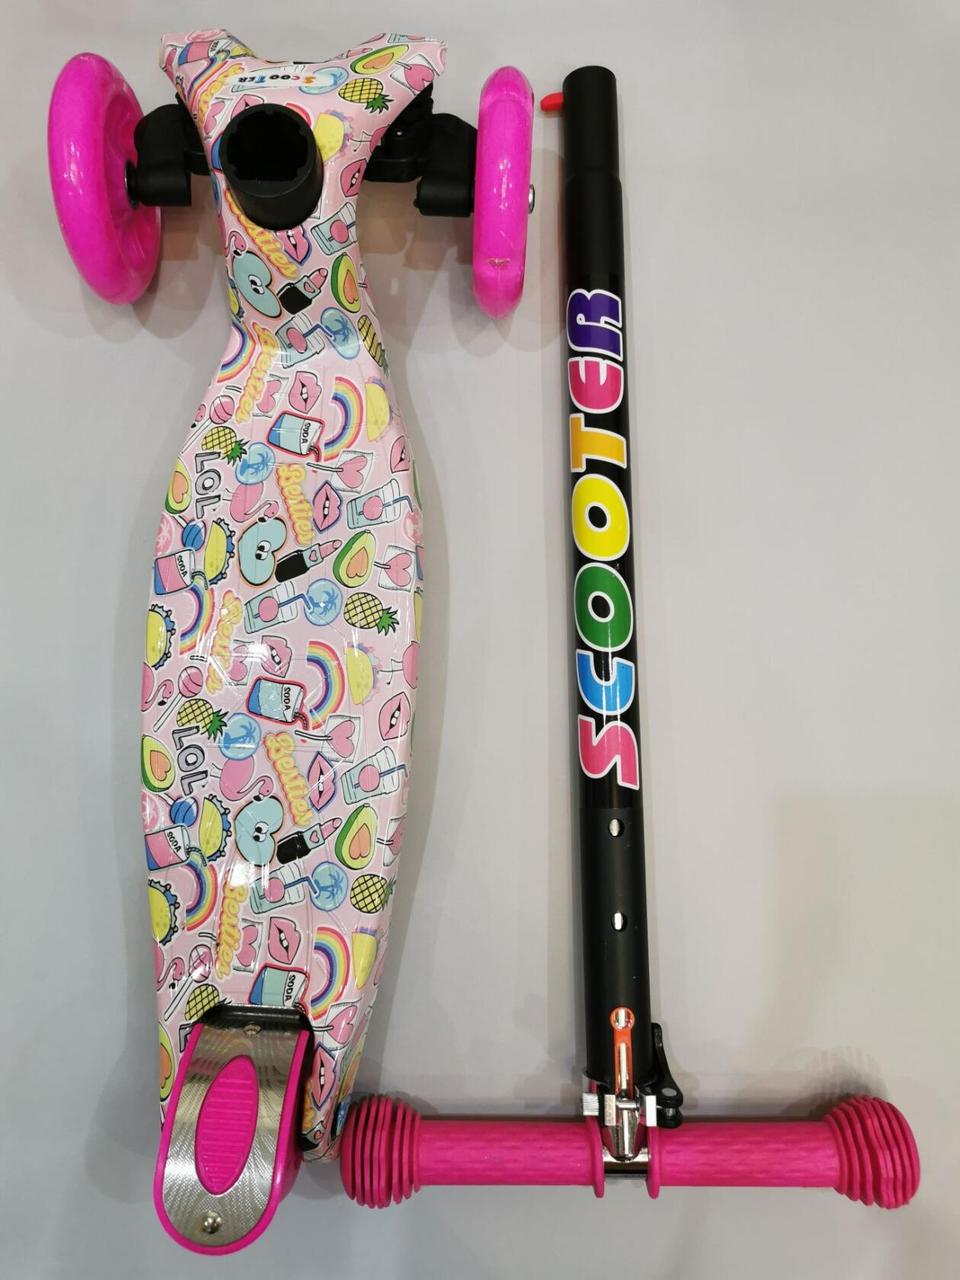 Детский самокат  Maxi  21st scooter розовый принт  надпись  LOL, фото 1